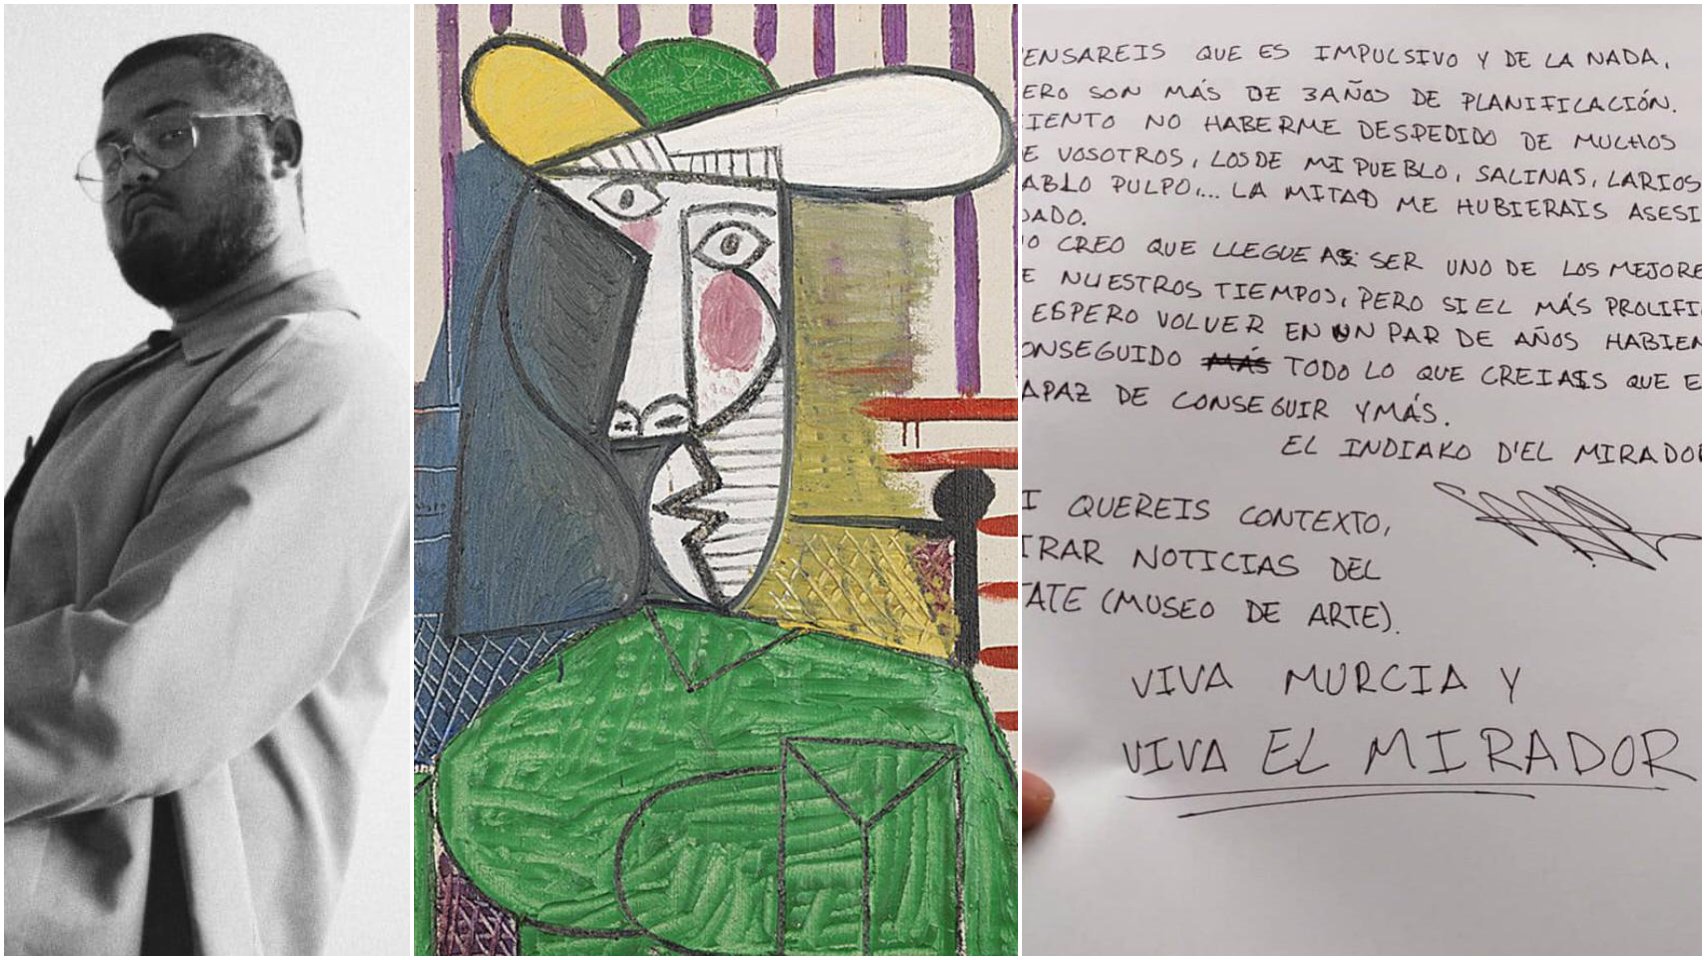  Un bărbat a fost condamnat la închisoare pentru distrugerea unei picturi a lui Pablo Picasso